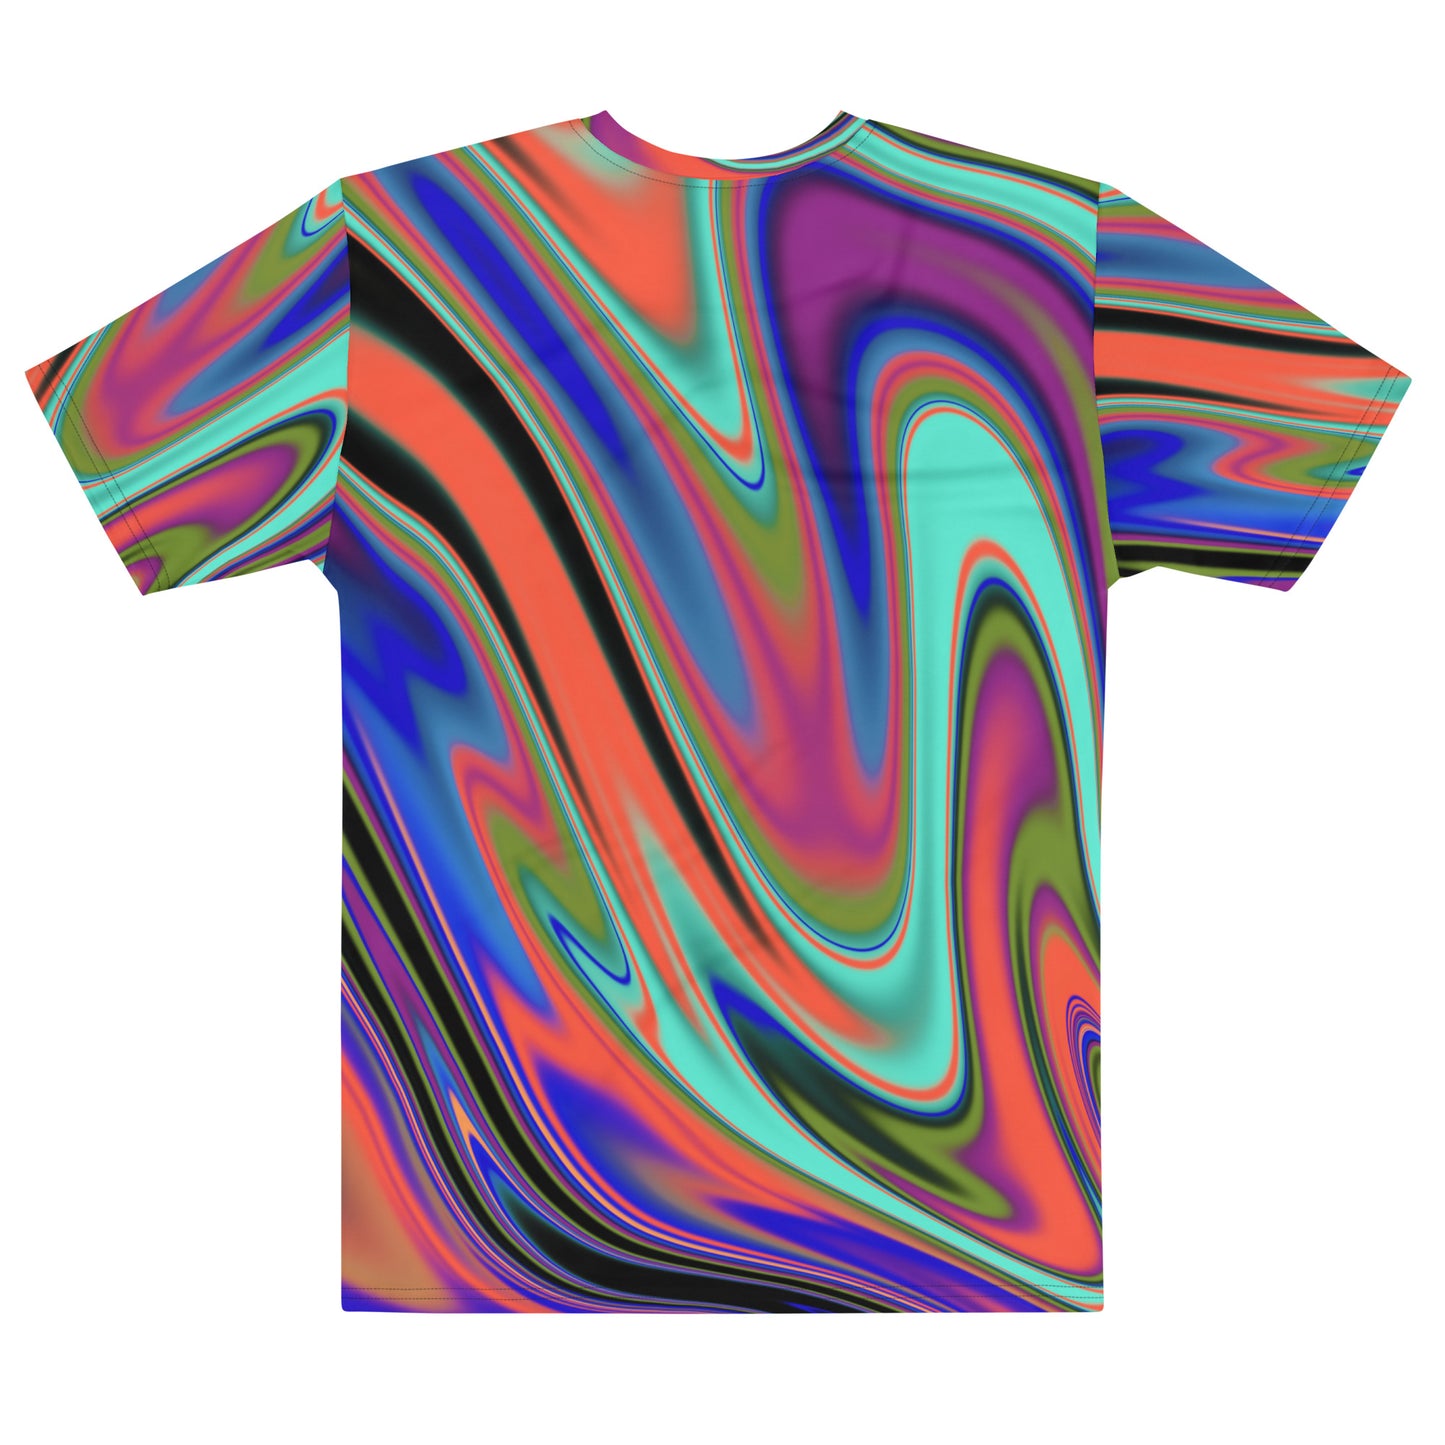 Chromatic Dreamz Allover t-shirt